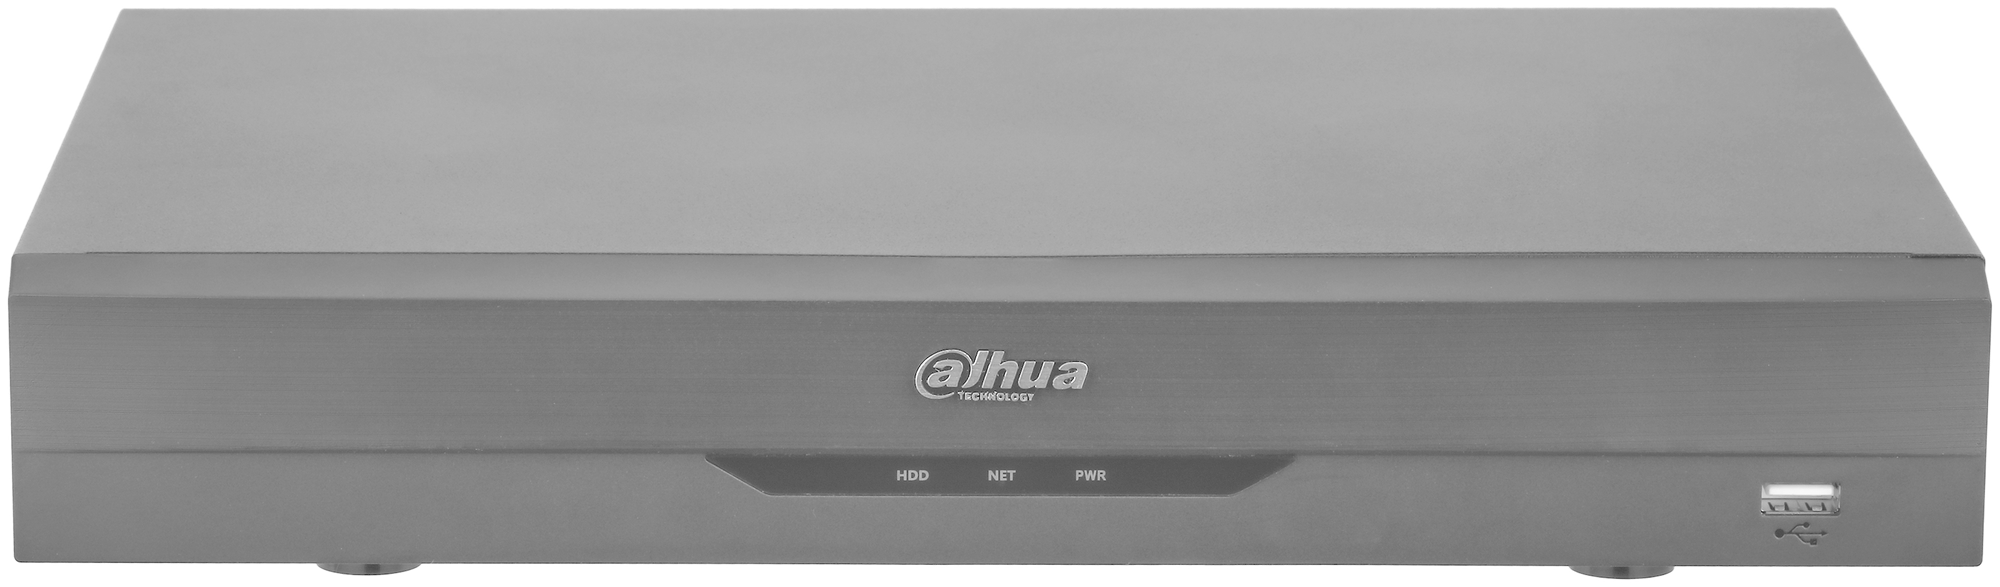 Видеорегистратор Dahua DH-XVR5108HE-I3 8-канальный HDCVI-видеорегистратор с FR